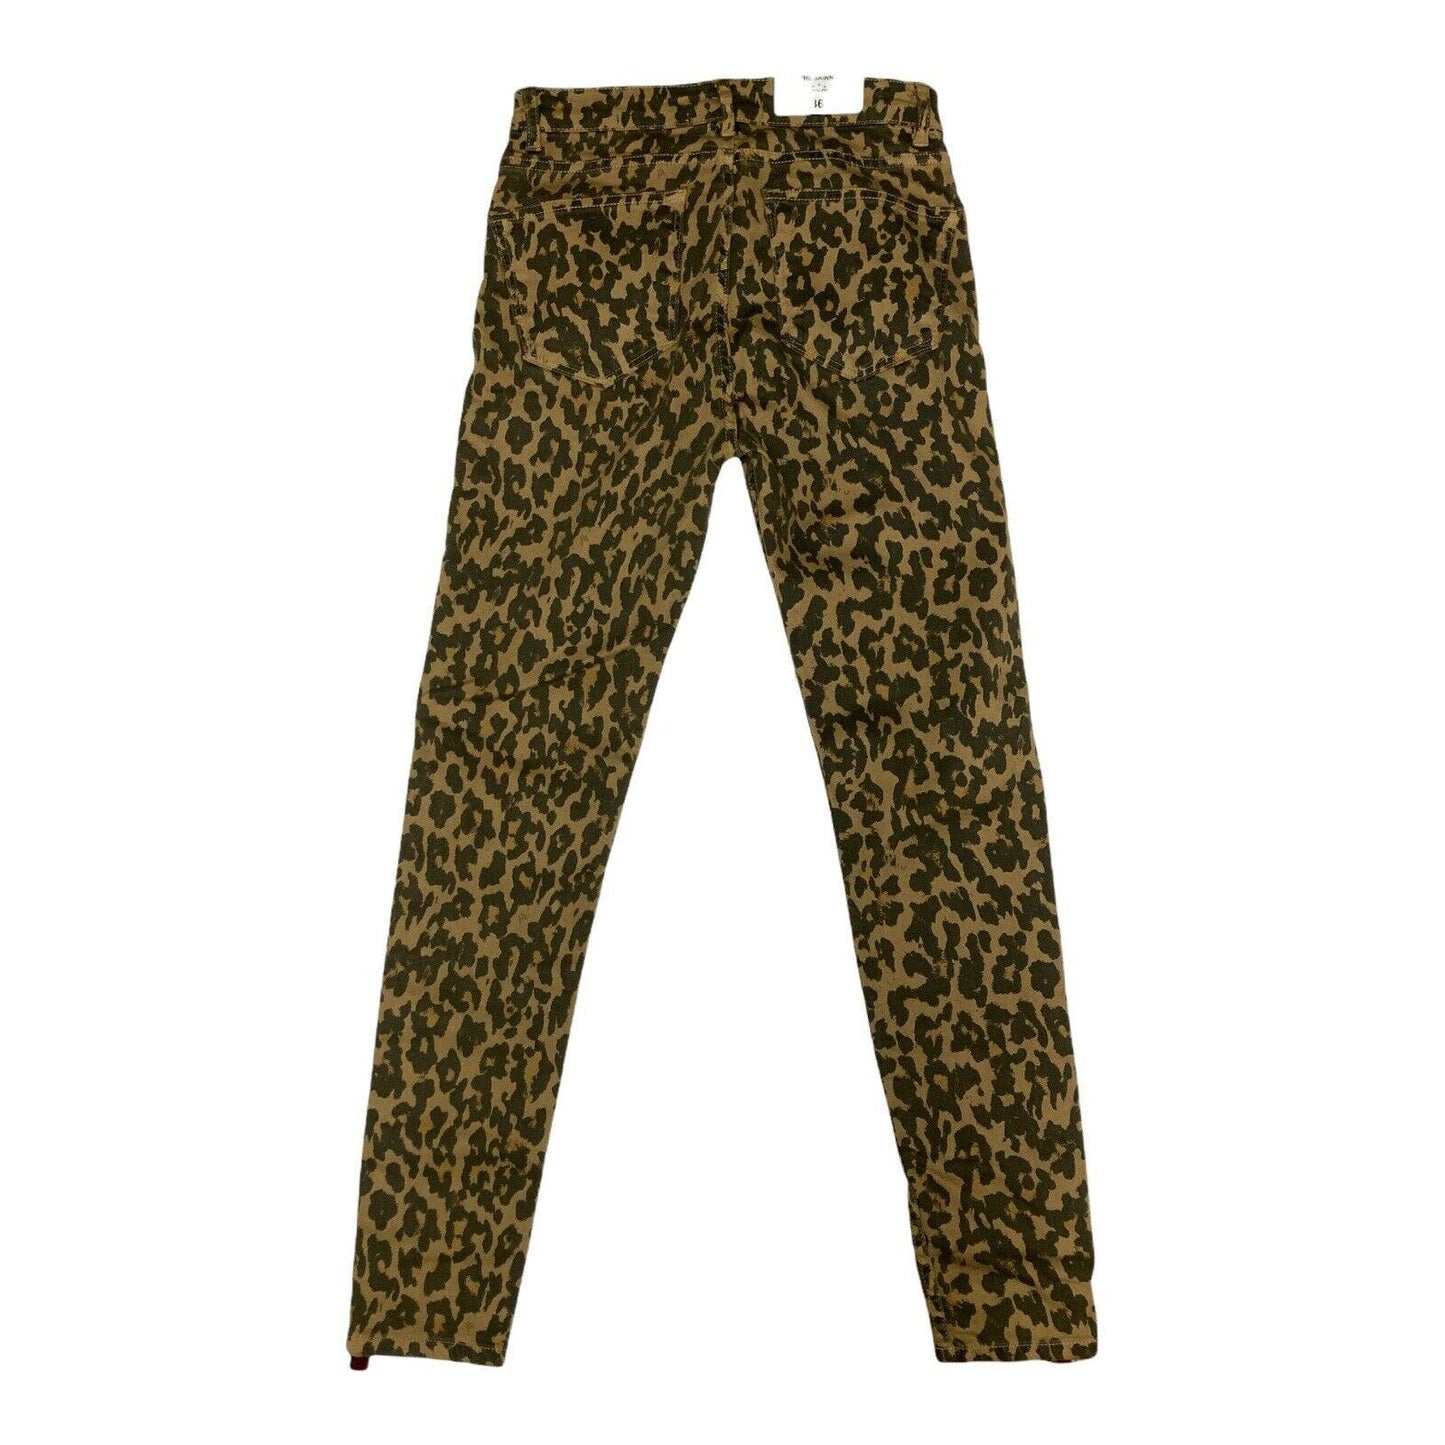 ZARA Woman Leopard Jeans Animal Print Skinny Red Velvet Stripe Size 4